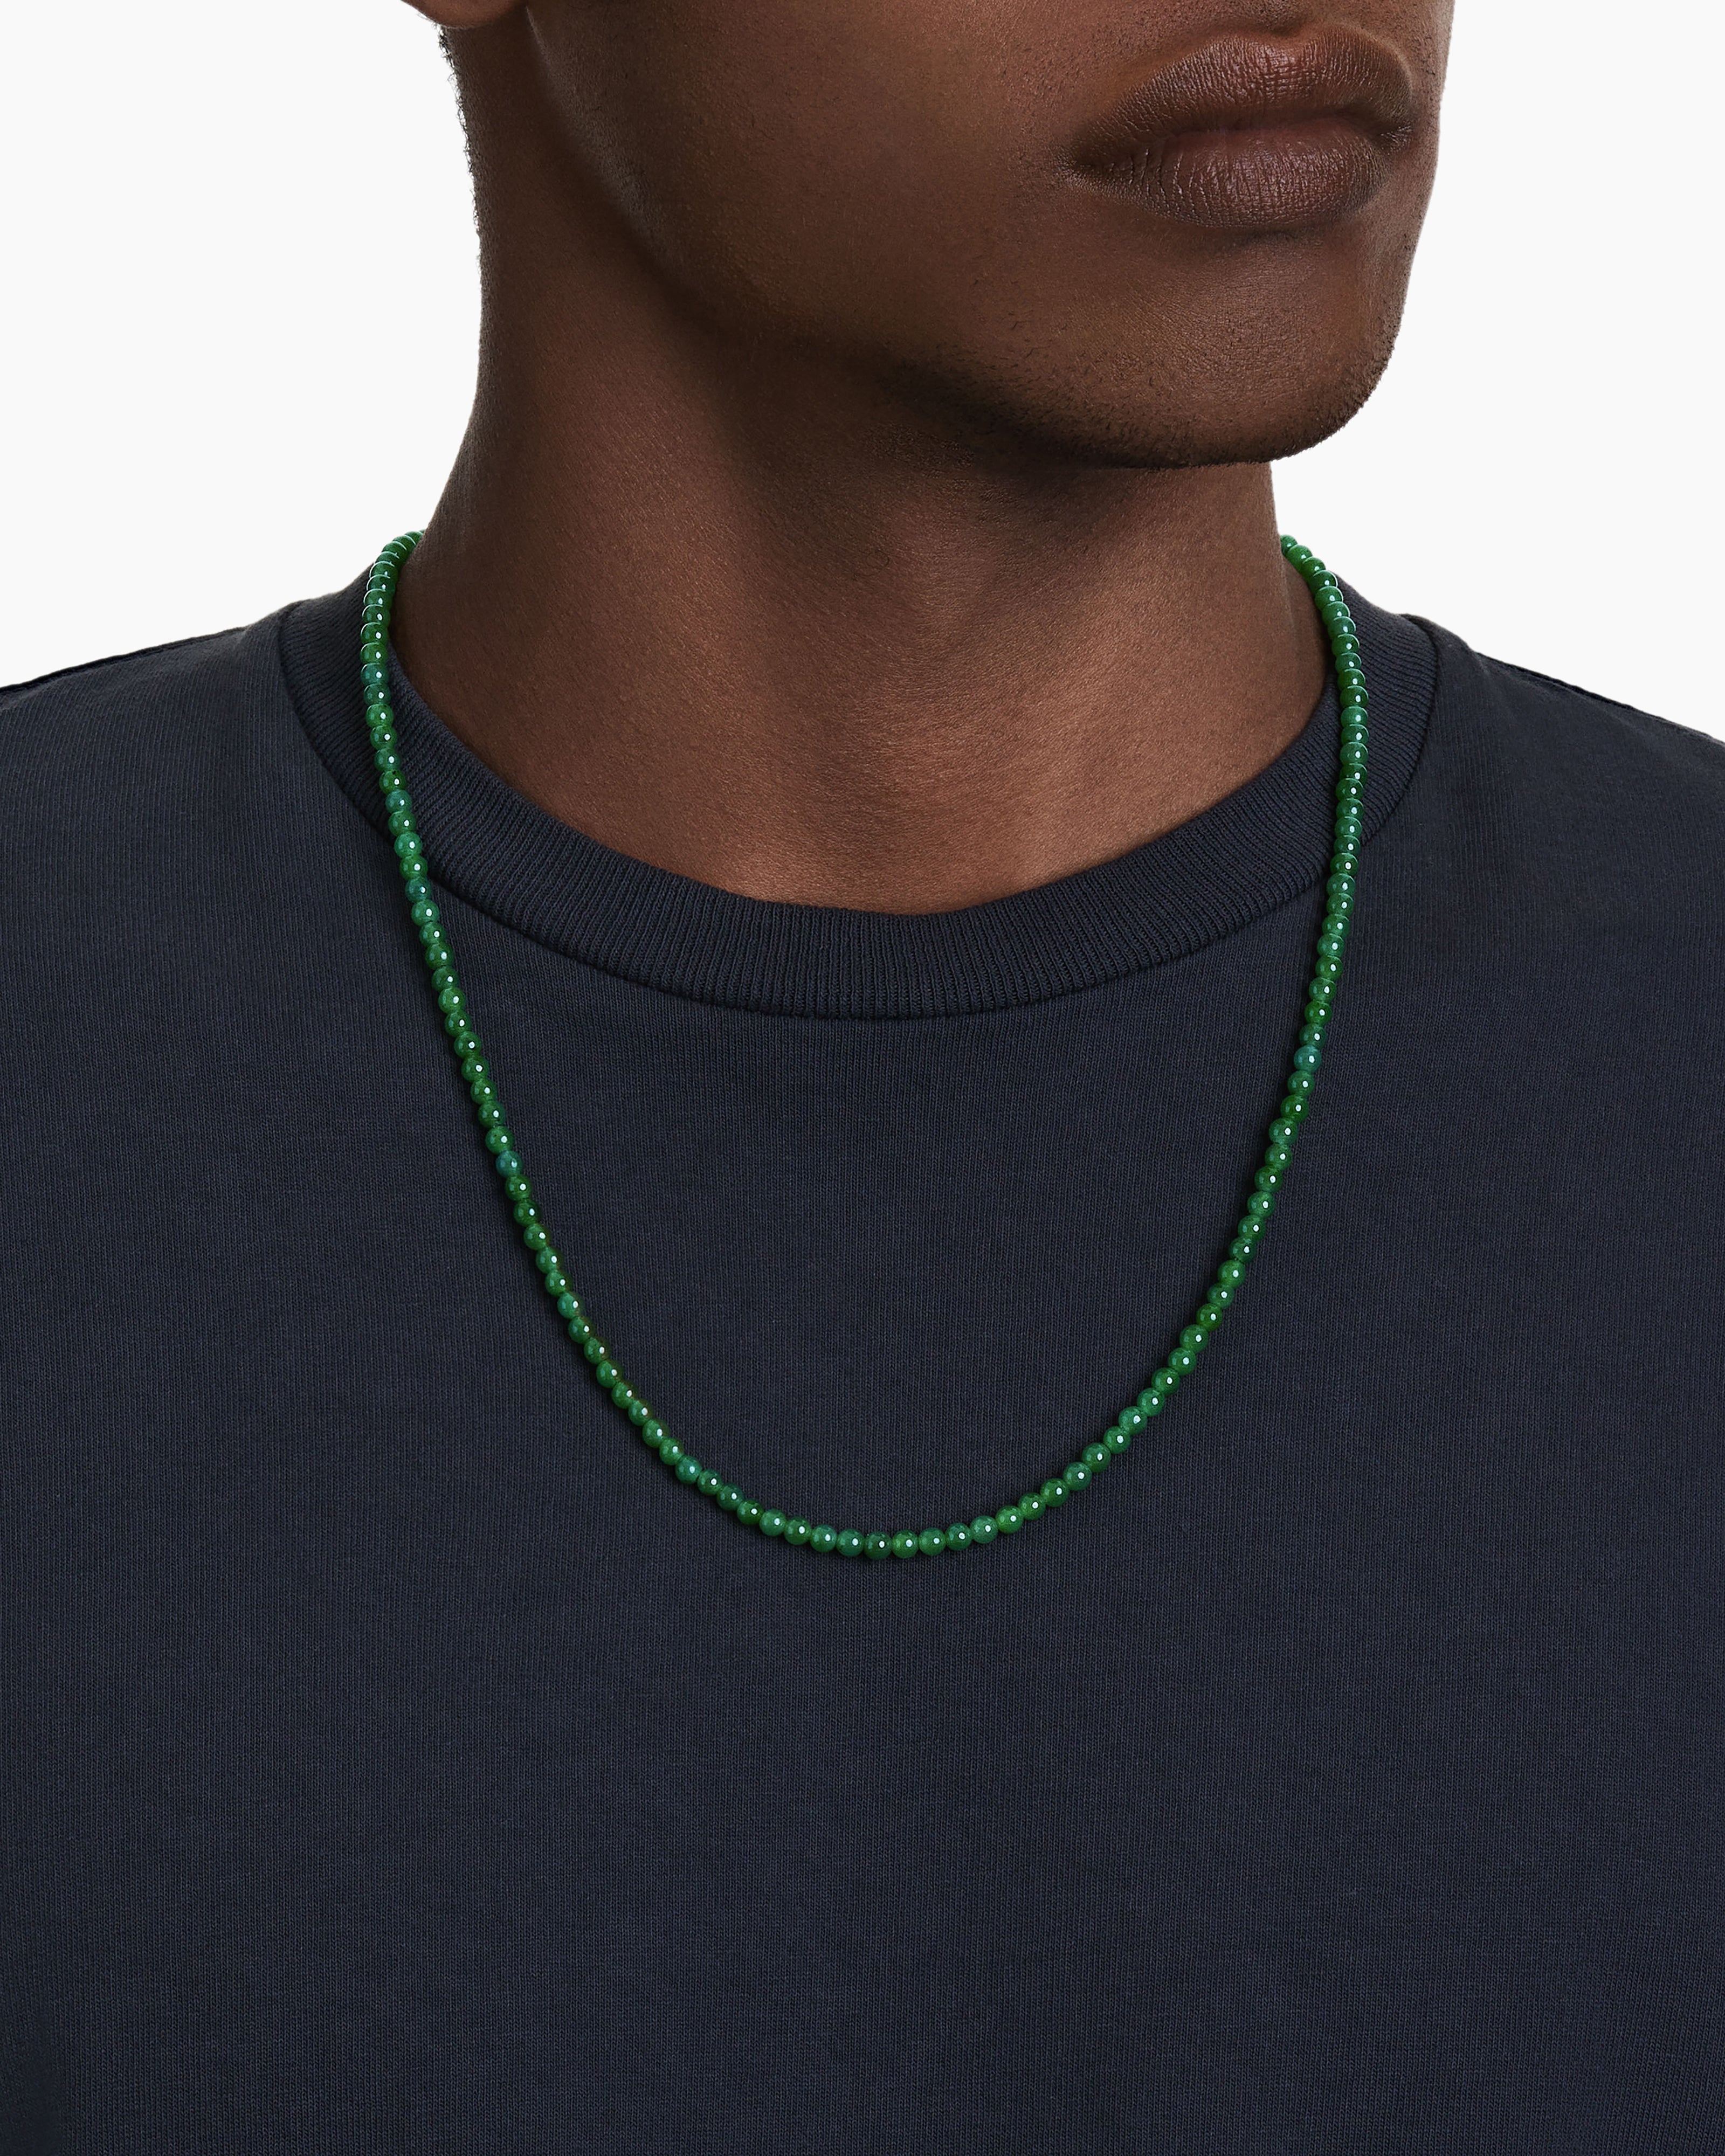 Shop Men's Beaded Necklaces | David Yurman